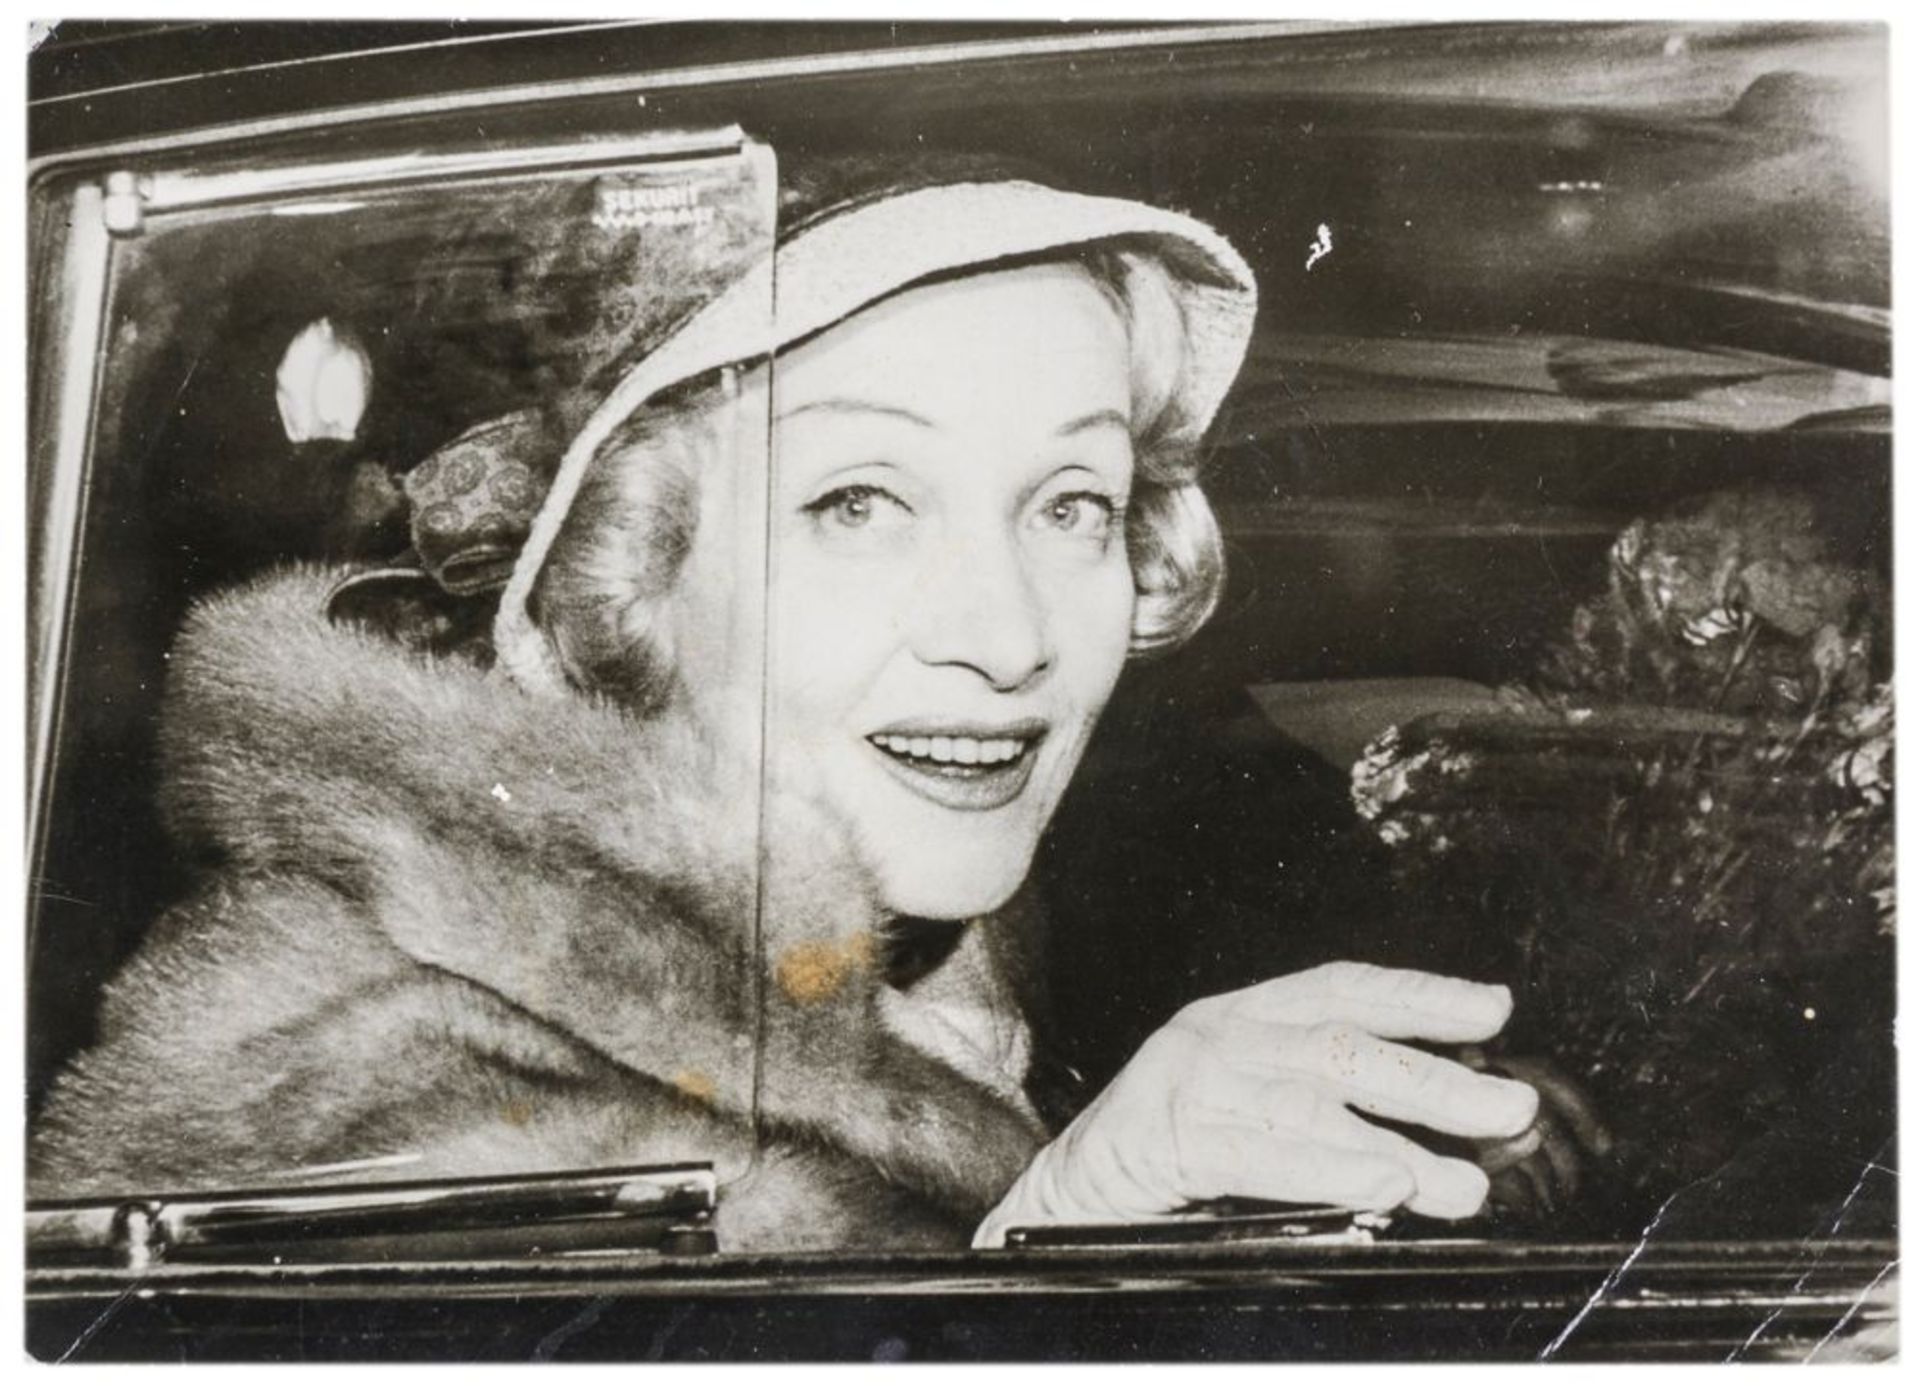 Dietrich, Marlene. Eigenhändige Signatur mit schwarzem Filzstift auf Porträt-Photographie. - Bild 3 aus 4